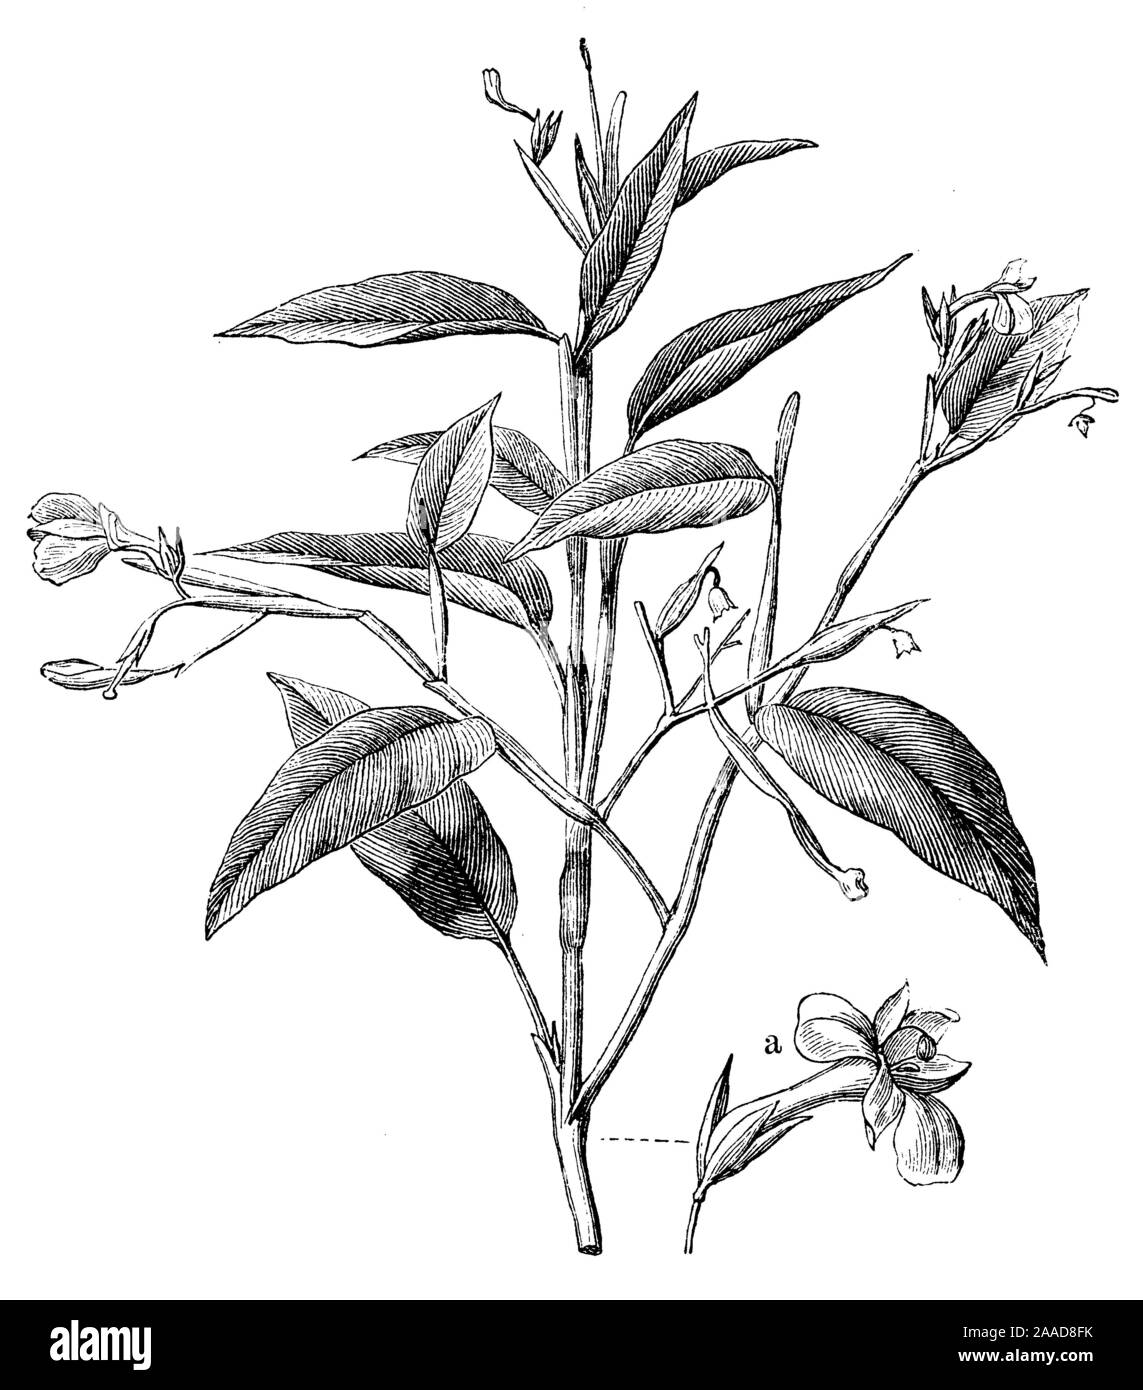 arrowroot, Maranta arundinacea,  (anthropology book, 1894) Stock Photo